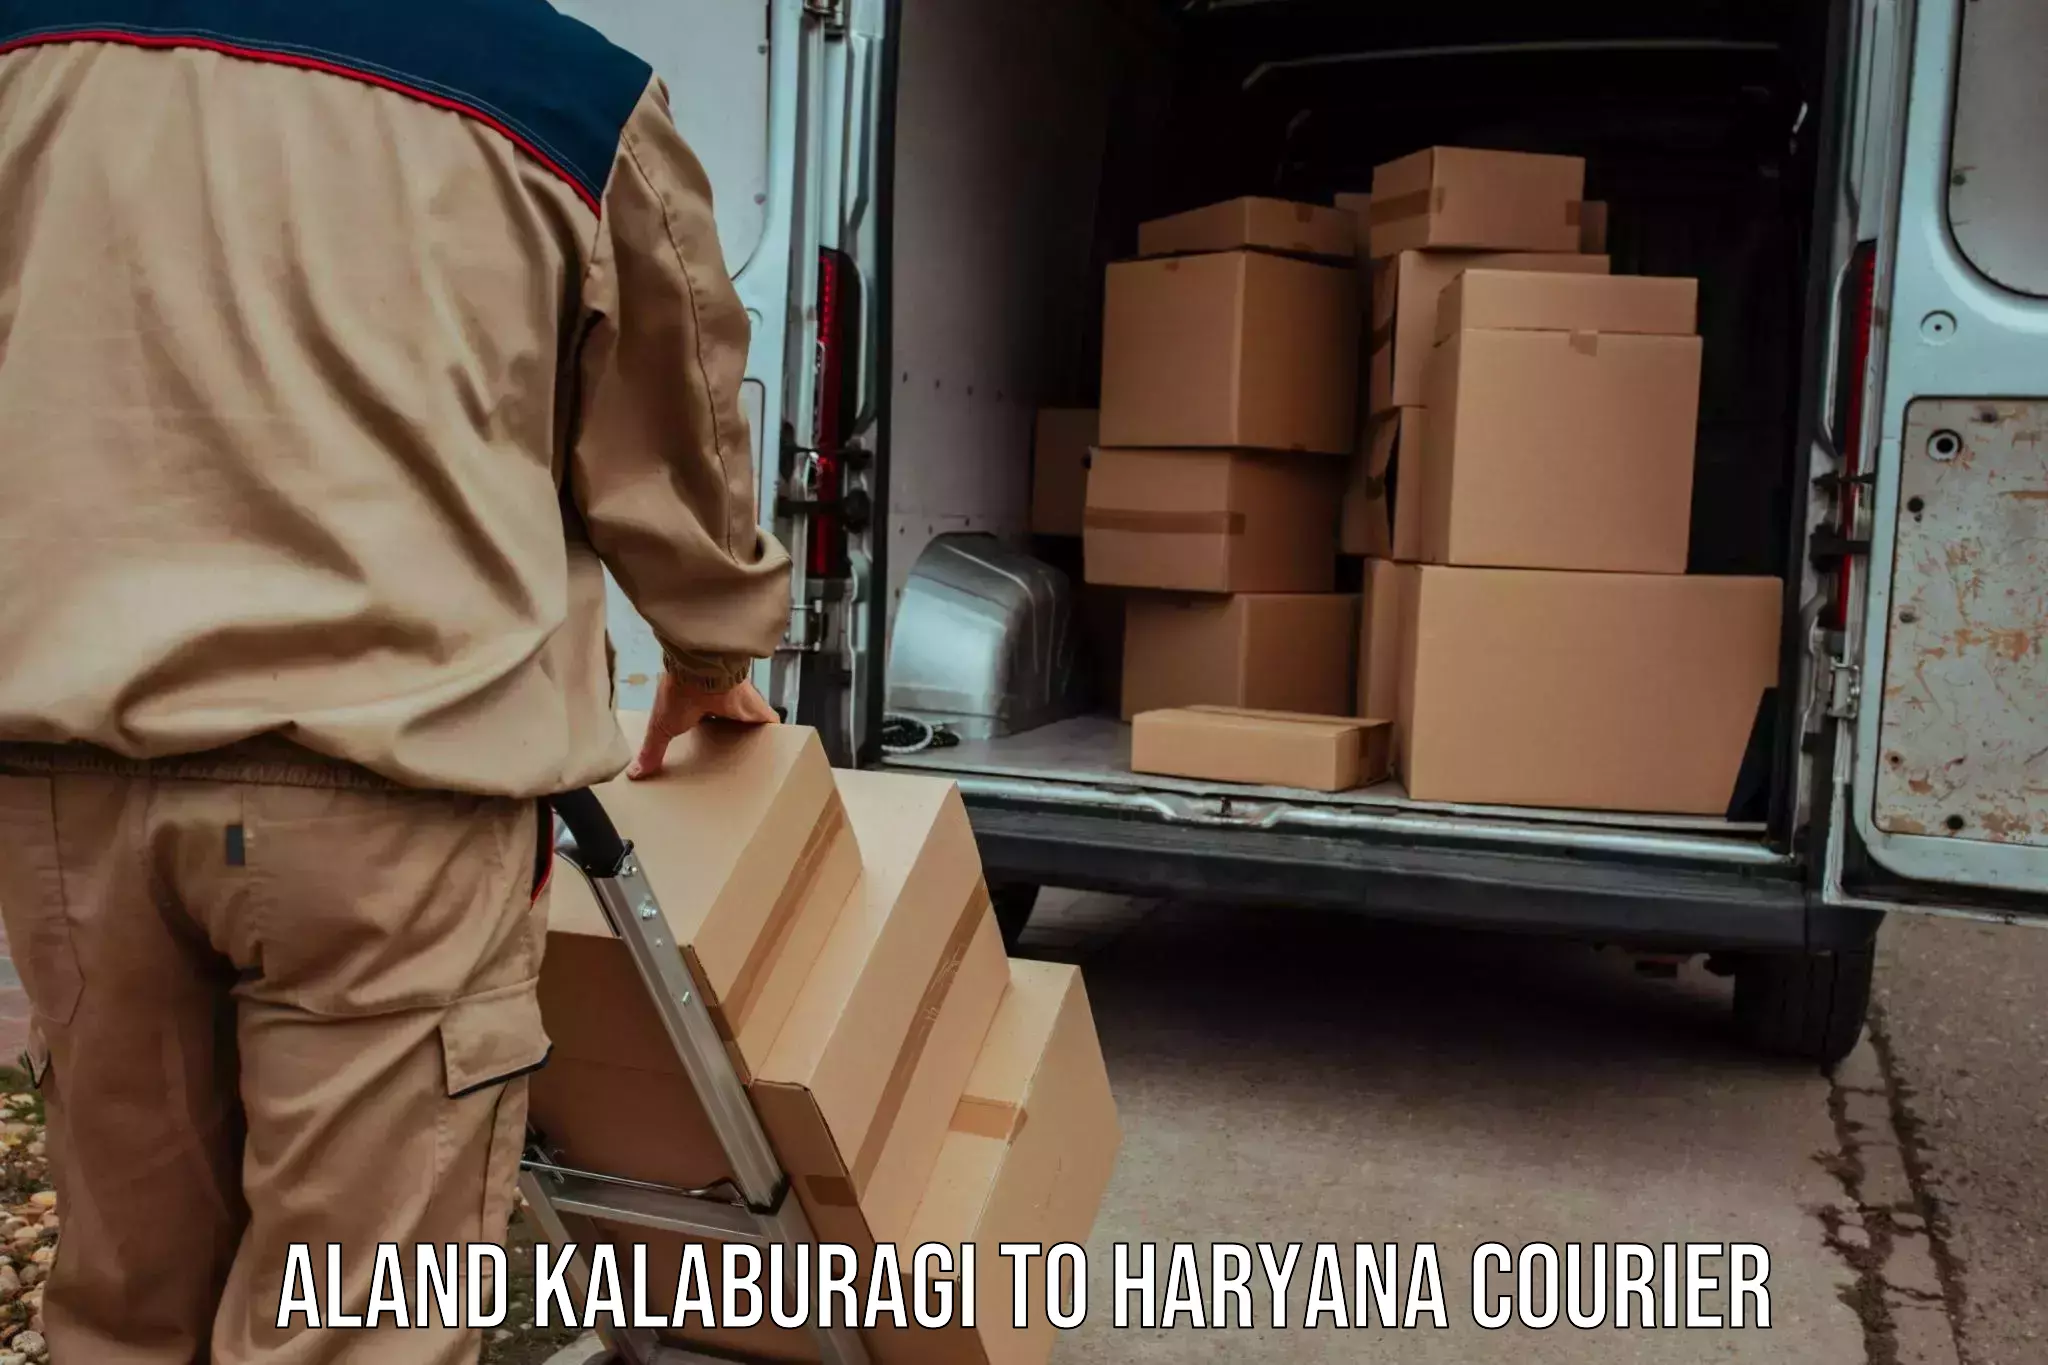 Express logistics service Aland Kalaburagi to Haryana